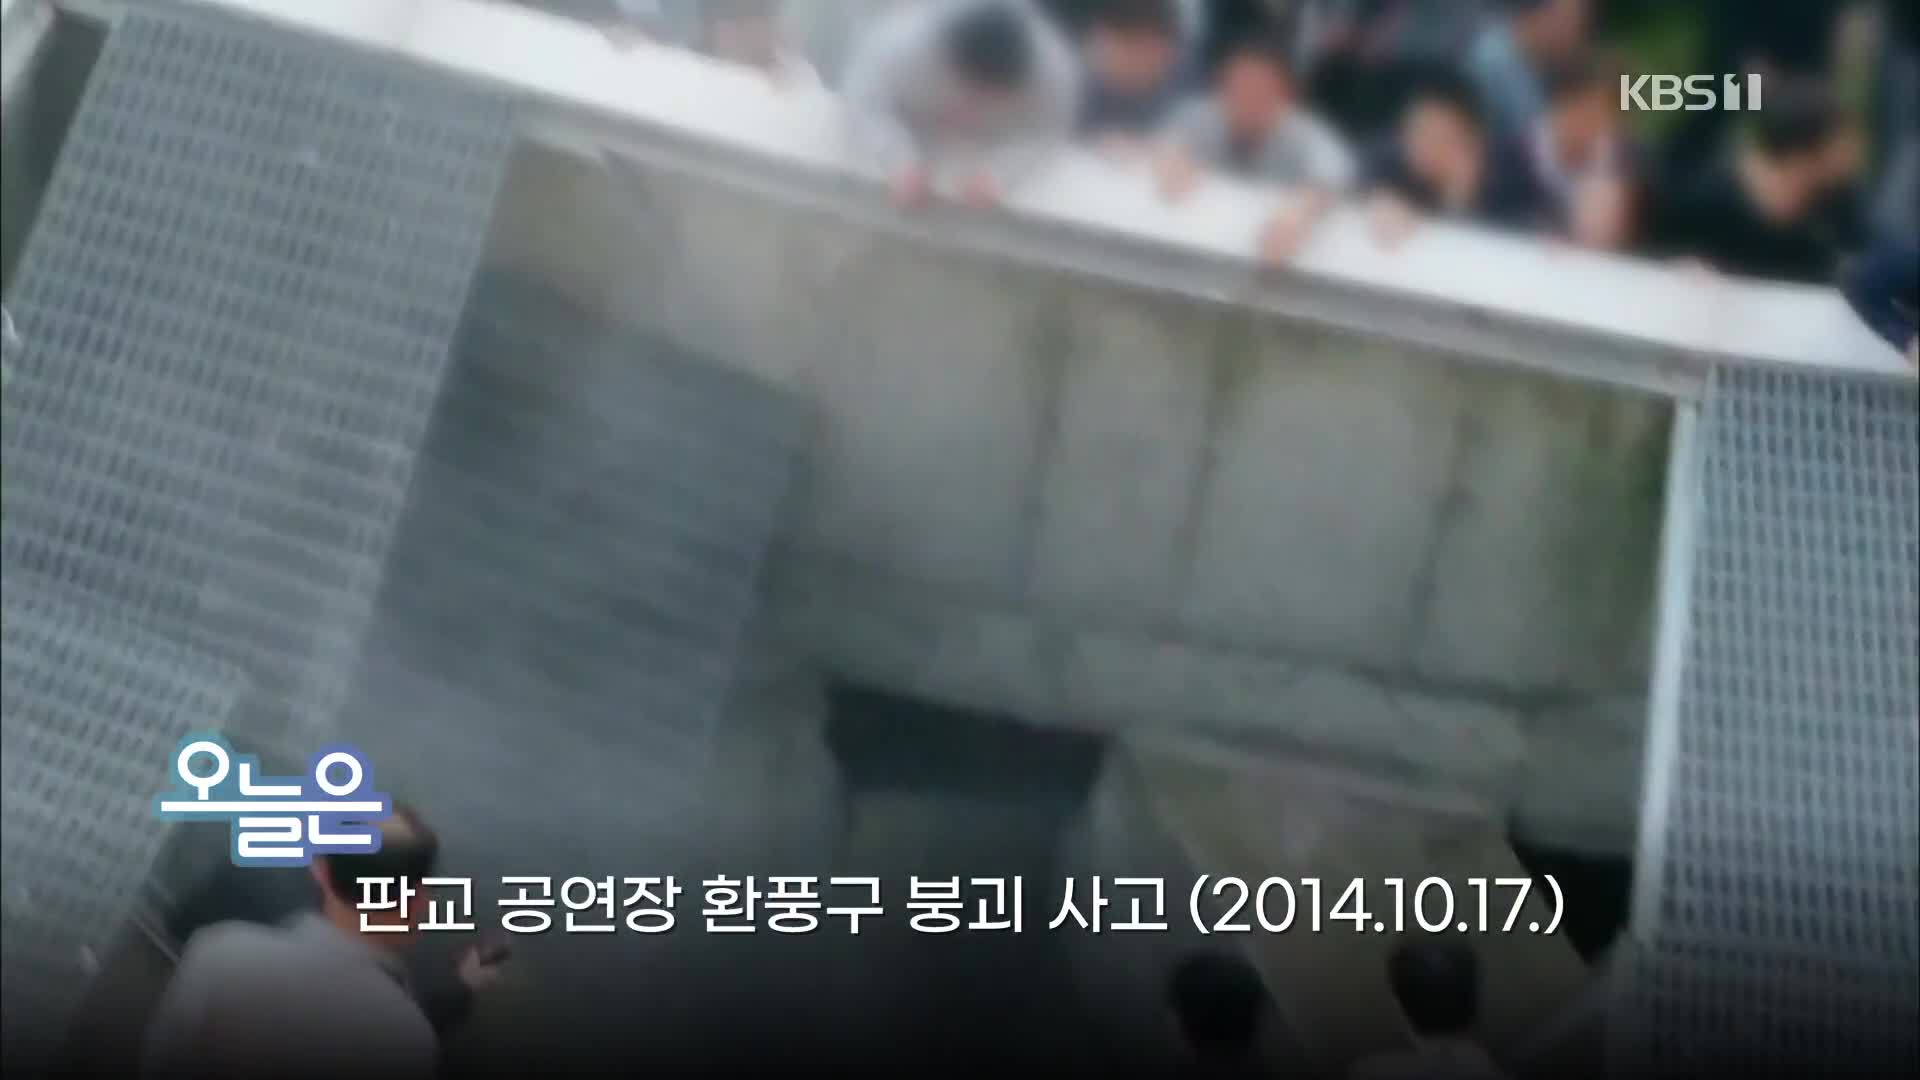 [오늘은] 판교 공연장 환풍구 붕괴 사고 (2014.10.17.)